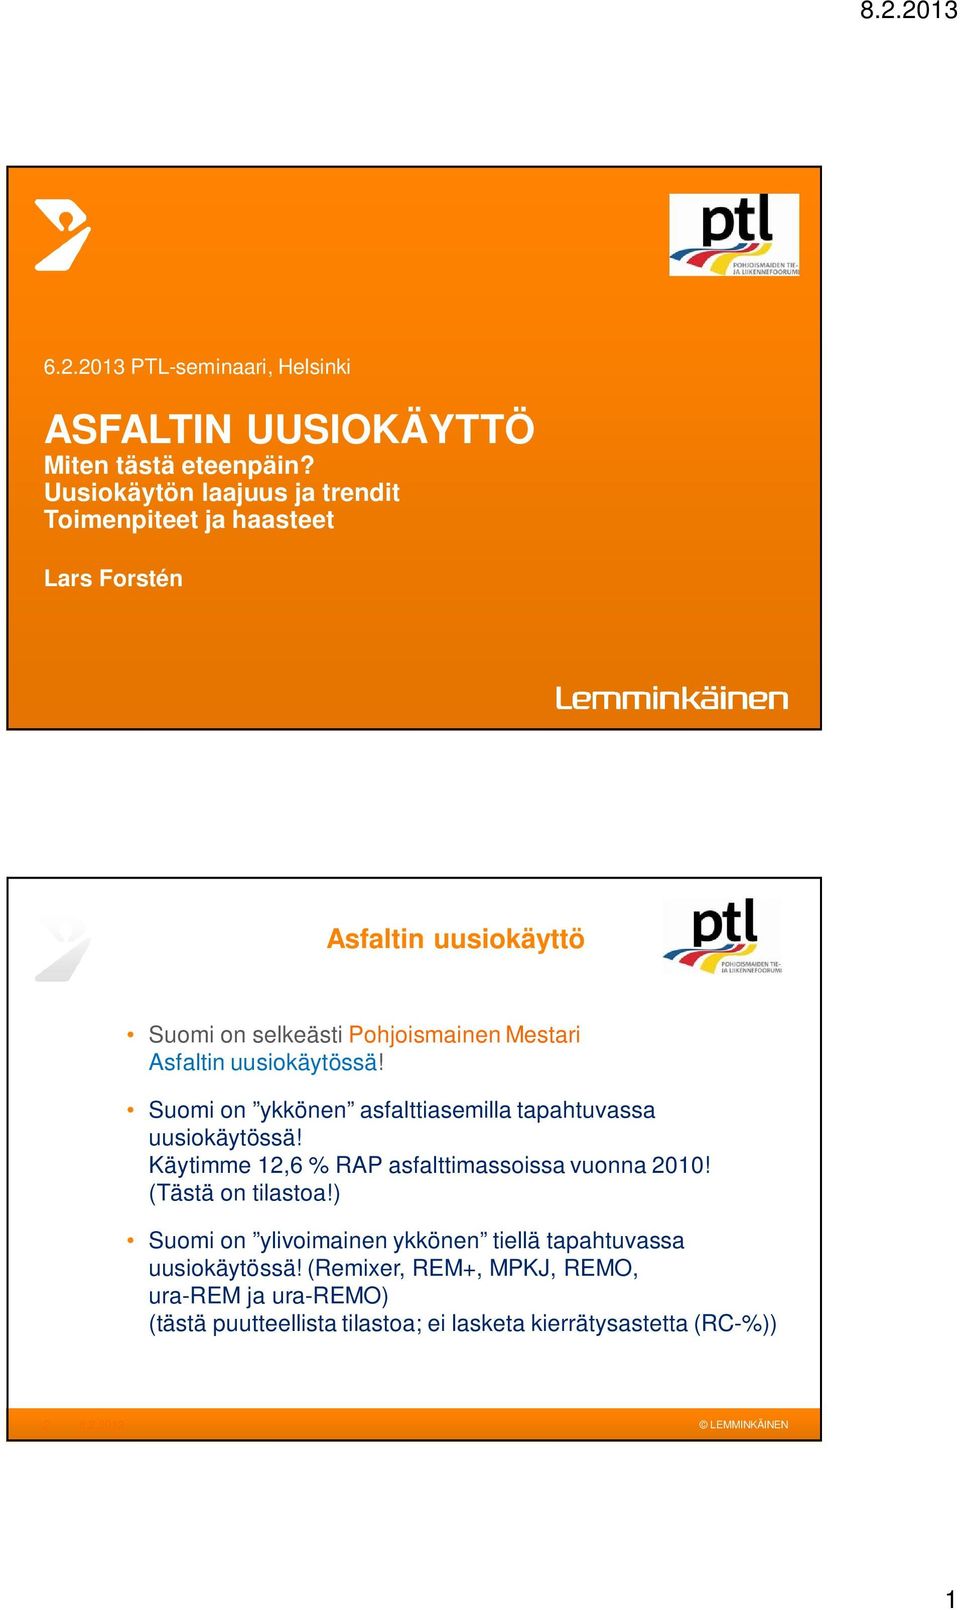 Asfaltin uusiokäytössä! Suomi on ykkönen asfalttiasemilla tapahtuvassa uusiokäytössä! Käytimme 12,6 % RAP asfalttimassoissa vuonna 2010!